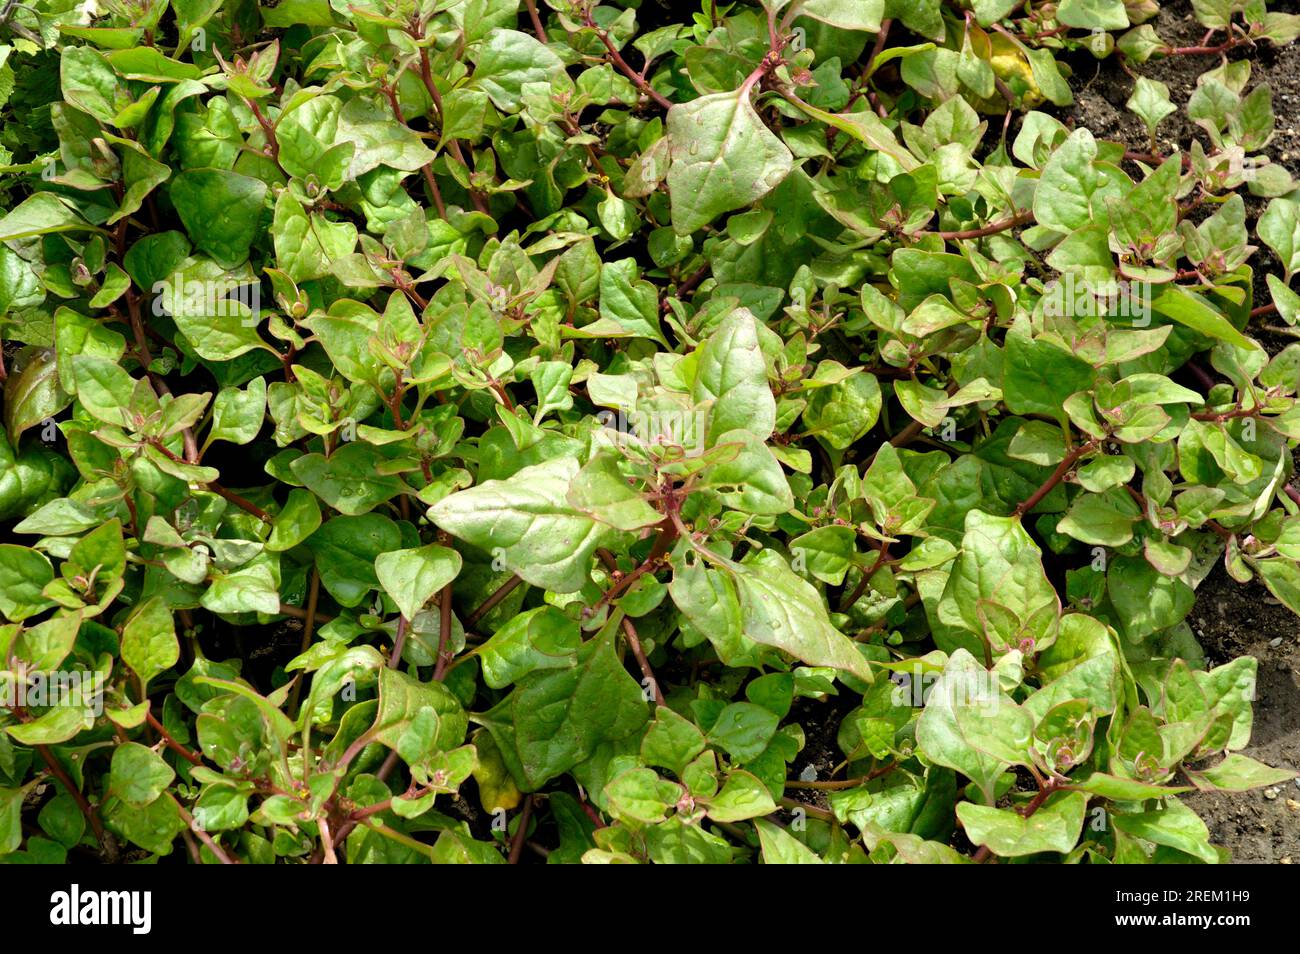 New Zealand spinach, New Zealand spinach, New Zealand spinach (Tetragonia tetragonioides) Stock Photo